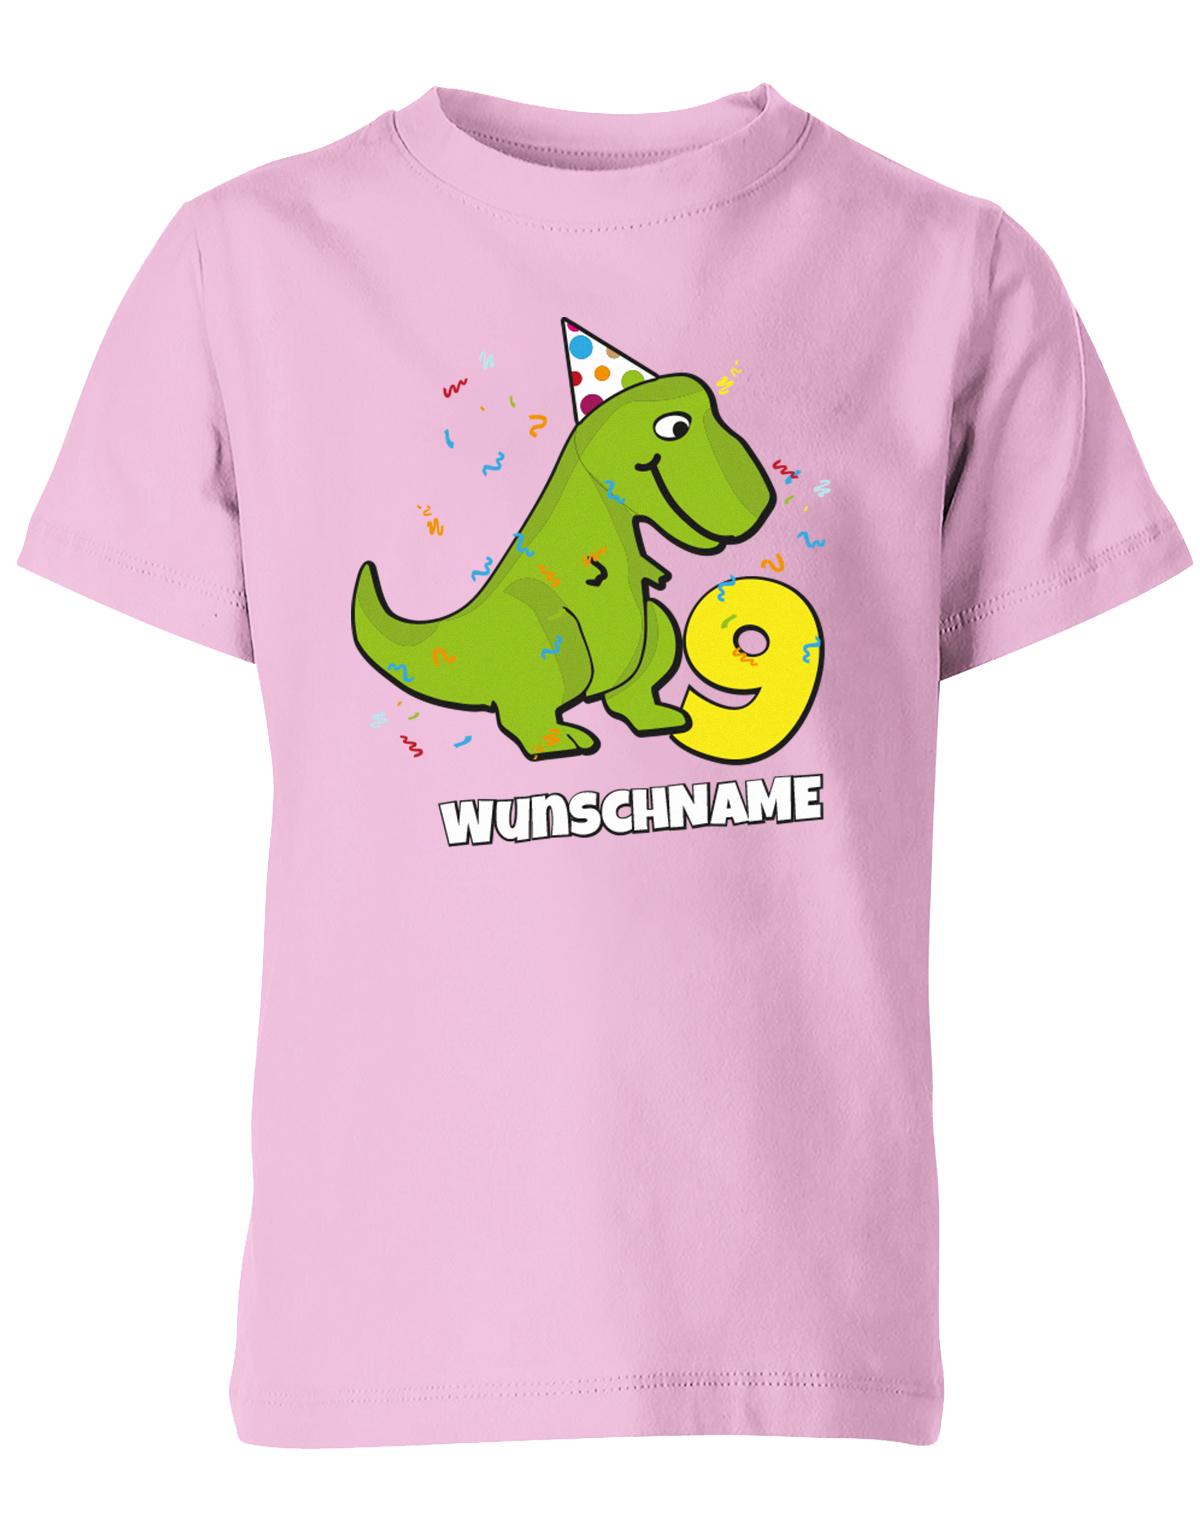 ich-bin-9-Dinosaurier-t-rex-wunschname-geburtstag-kinder-shirt-rosa